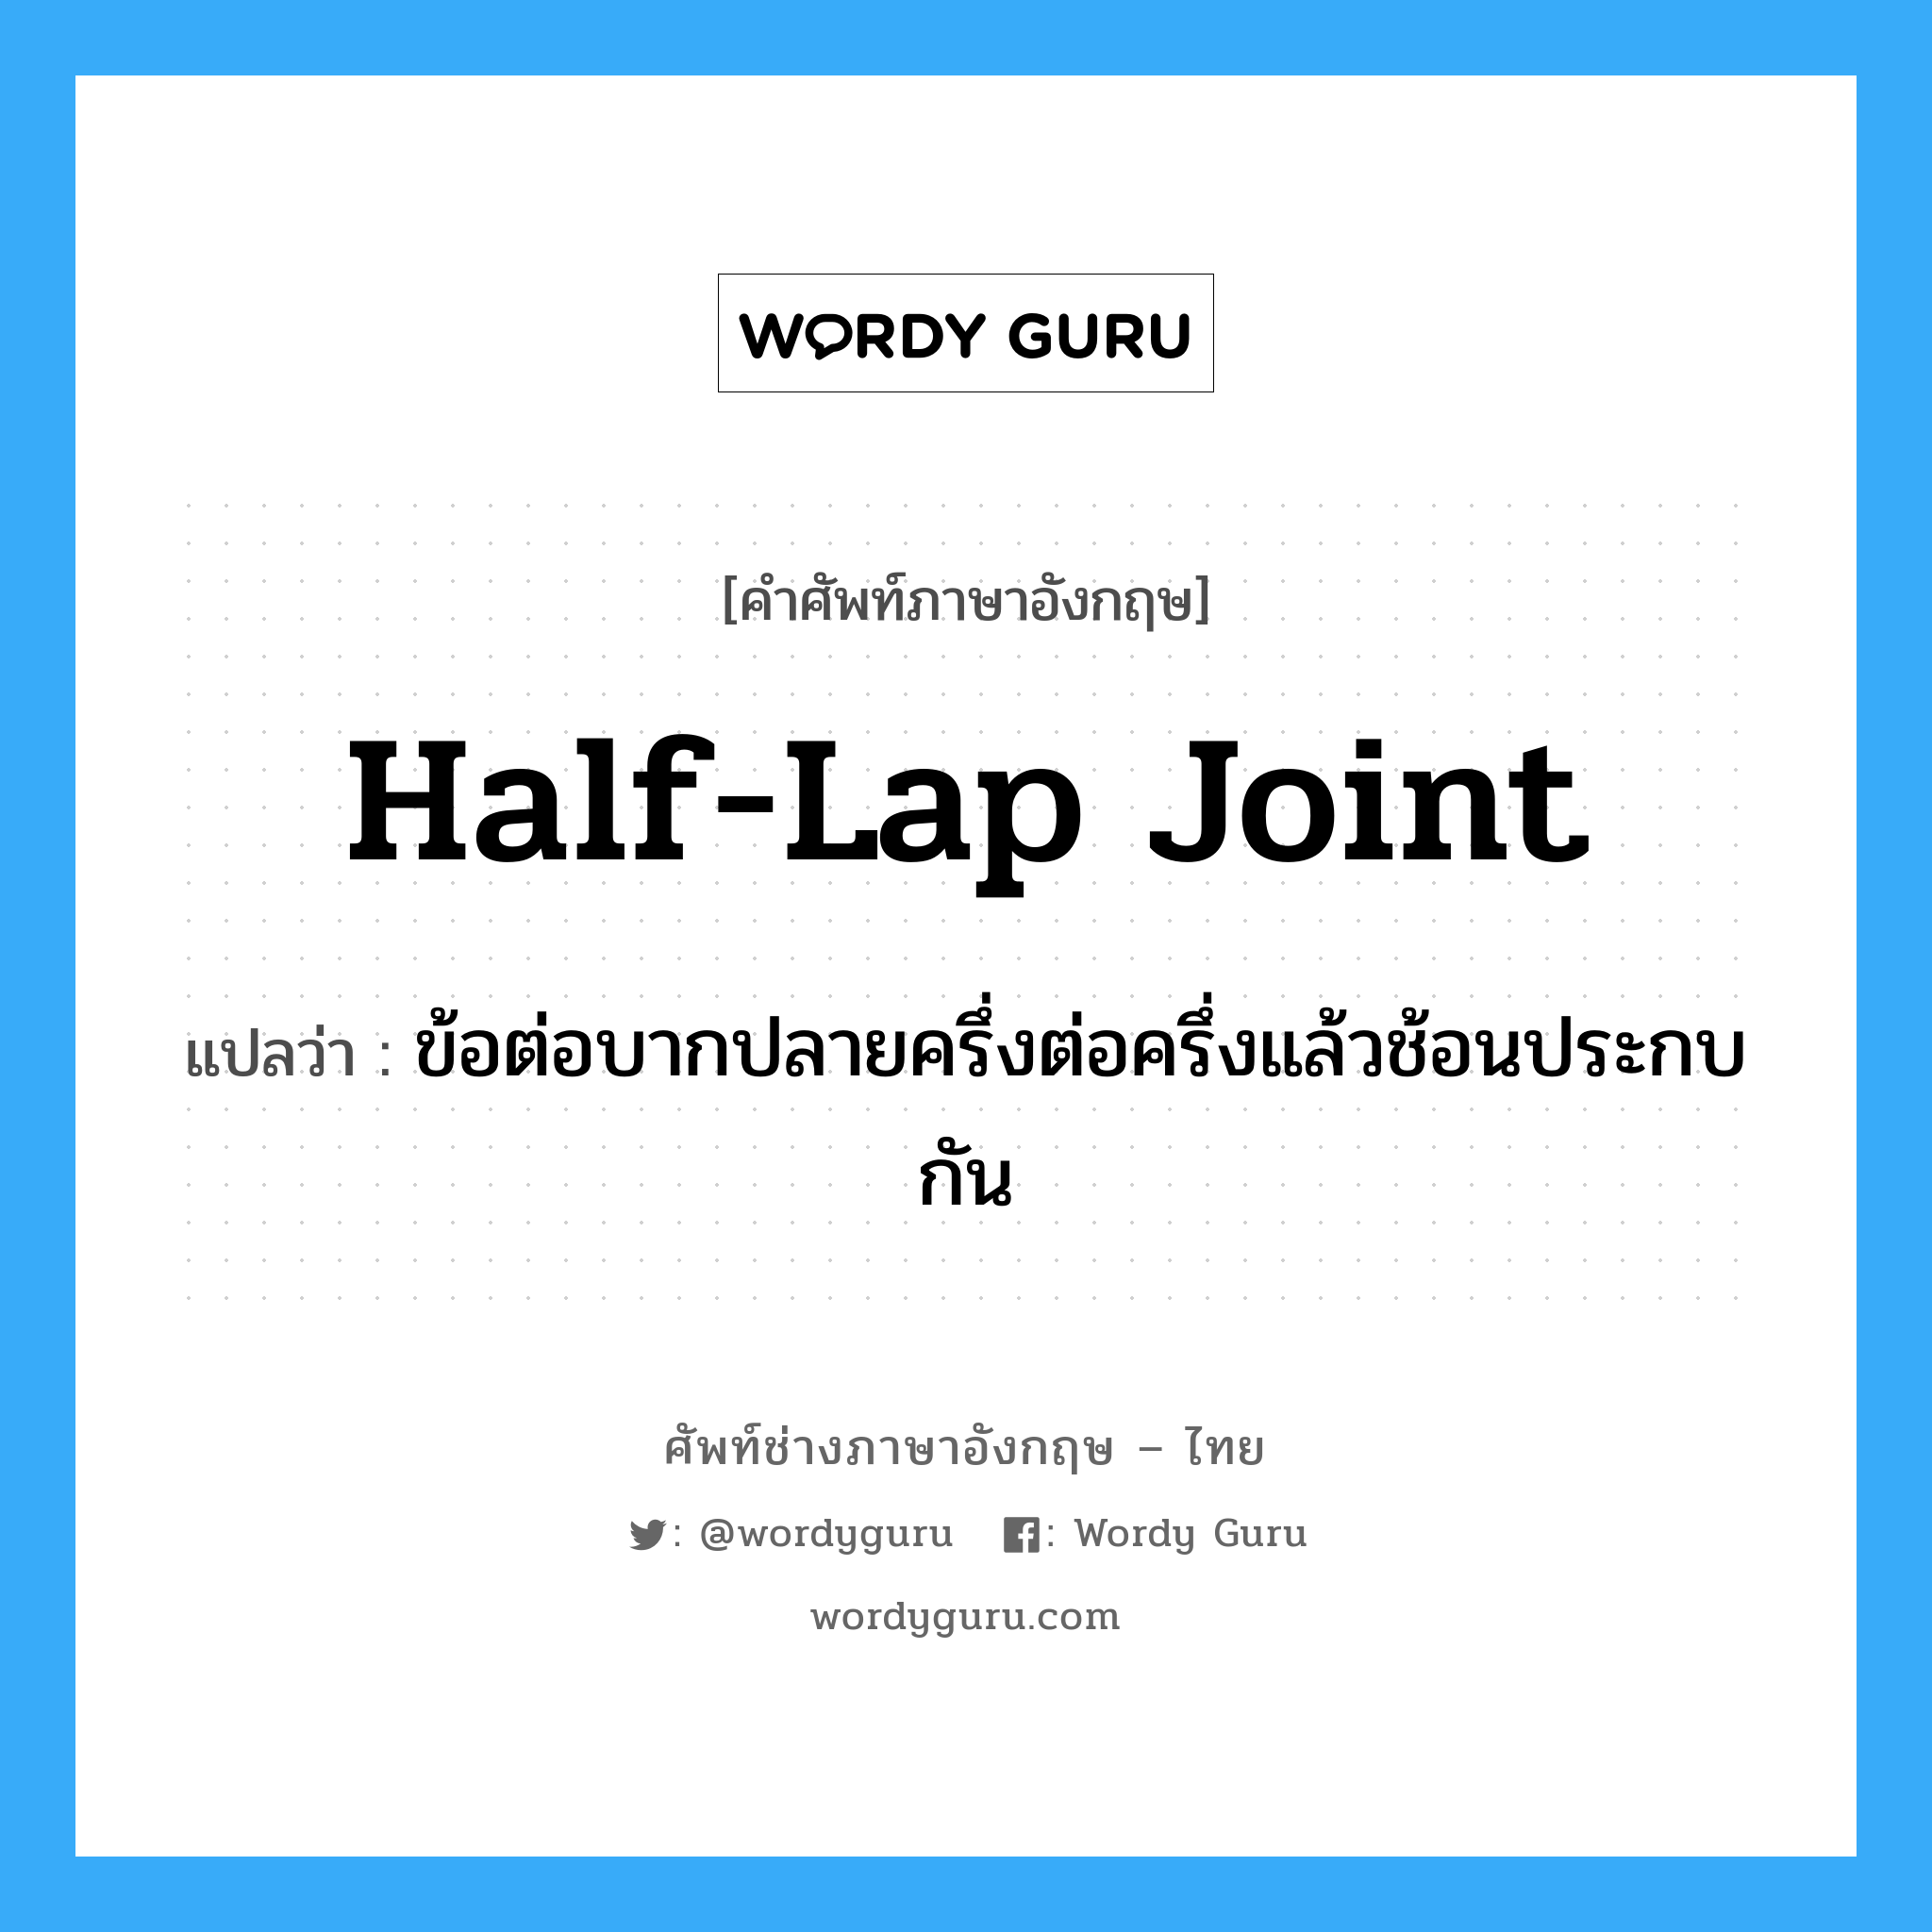 half-lap joint แปลว่า?, คำศัพท์ช่างภาษาอังกฤษ - ไทย half-lap joint คำศัพท์ภาษาอังกฤษ half-lap joint แปลว่า ข้อต่อบากปลายครึ่งต่อครึ่งแล้วช้อนประกบกัน